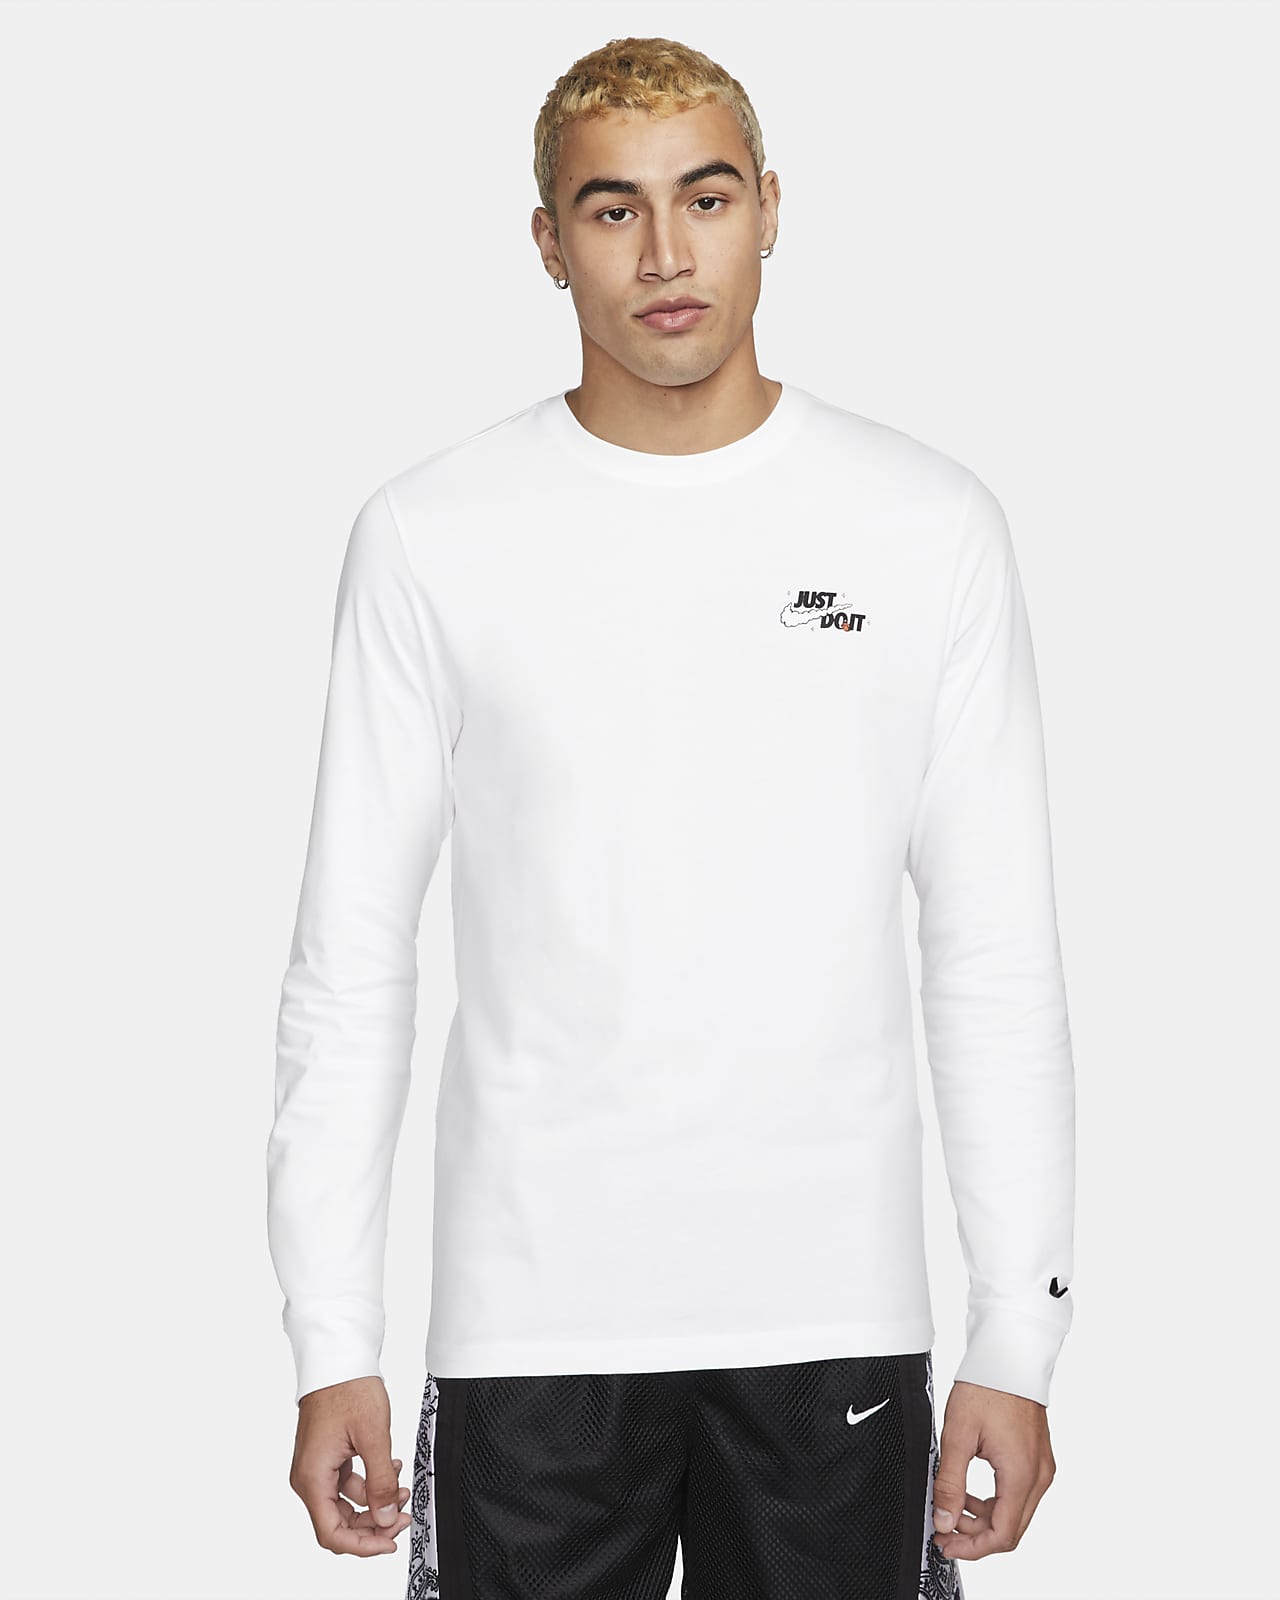 Uva Confiar Complicado Nike "Just Do It." Camiseta de manga larga - Hombre. Nike ES